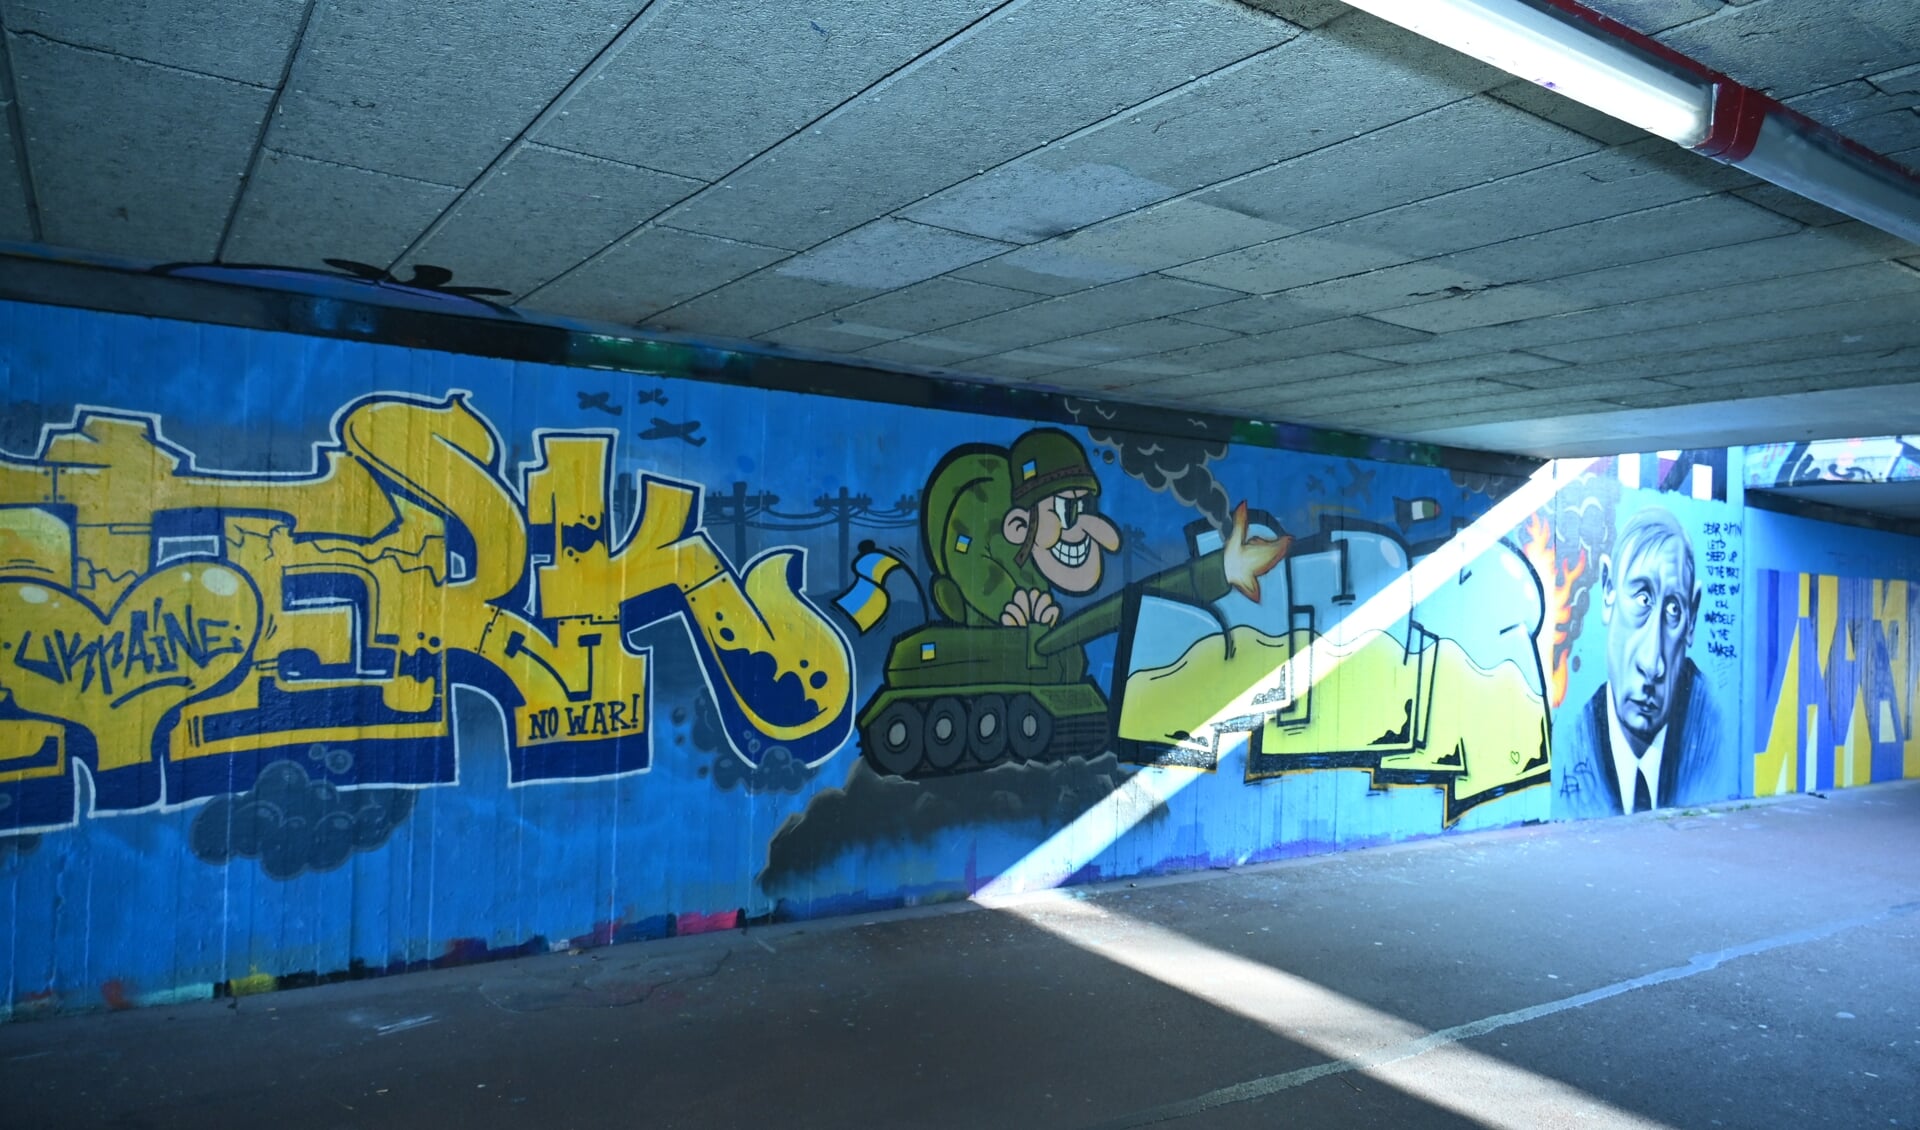 Graffitikunstenaars hebben een werk gemaakt waarmee ze hun ongenoegen uiten tegen de oorlog. Foto: Gerard van Warmerdam